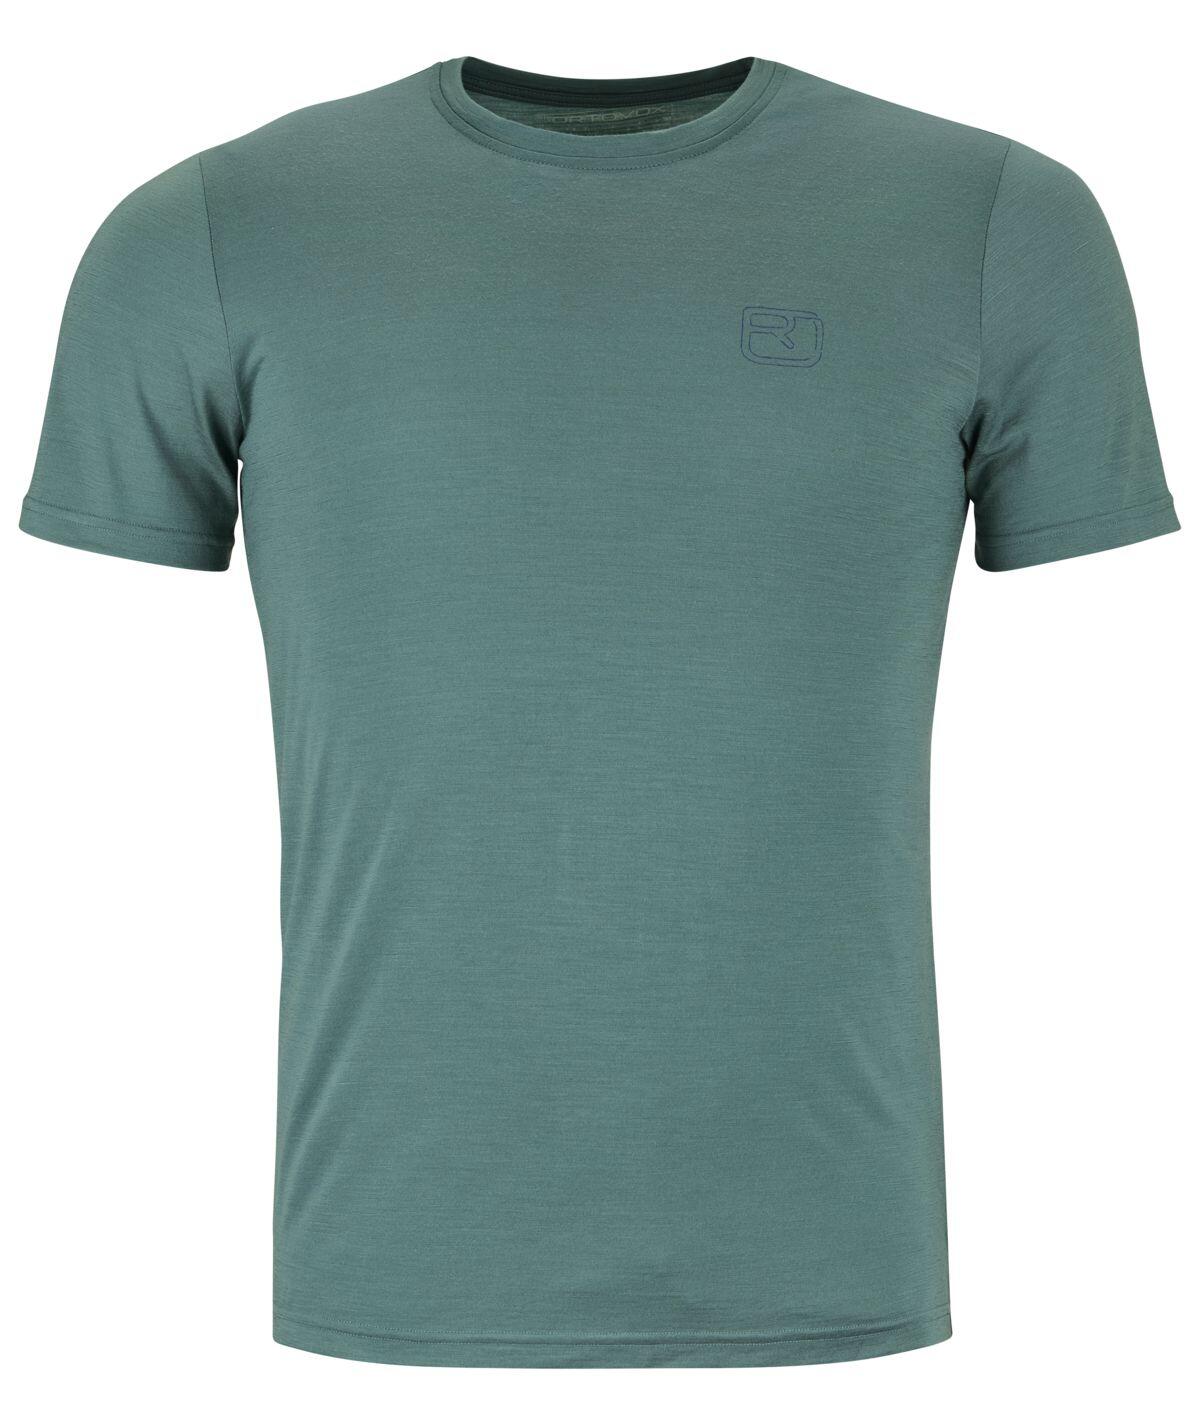 Ortovox 150 Cool Ballpen T-shirt Men's Barva: arctic grey, Velikost: L